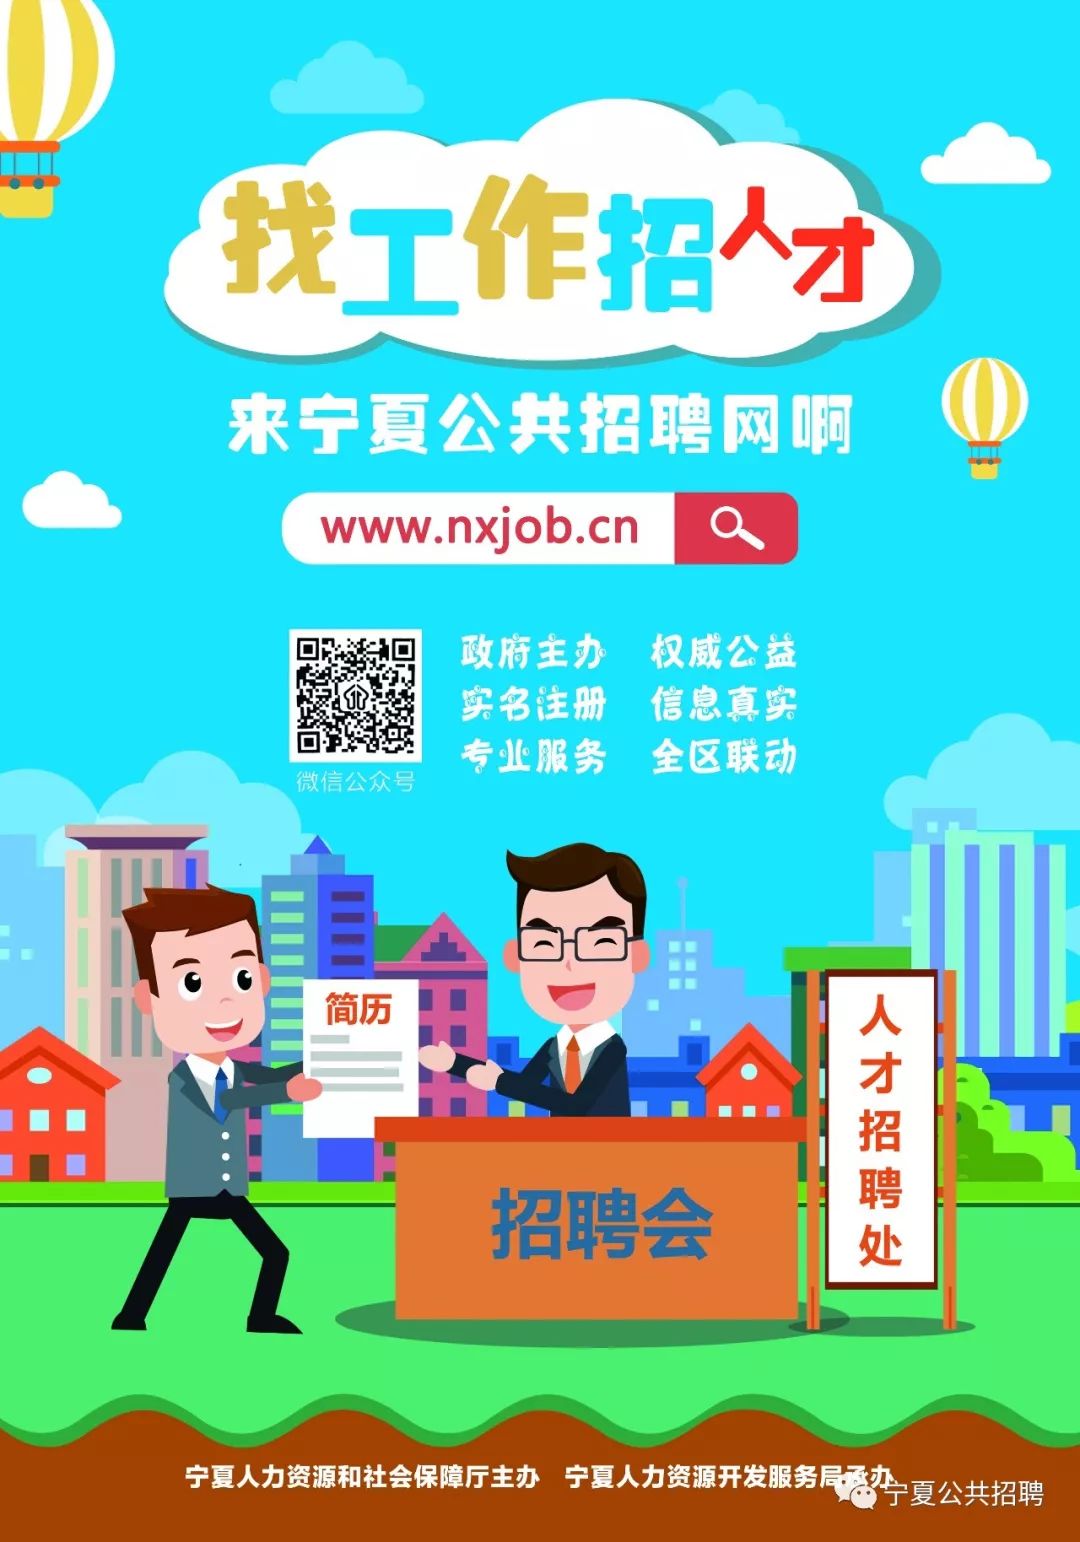 今日关注||宁夏公共招聘网欢迎您!